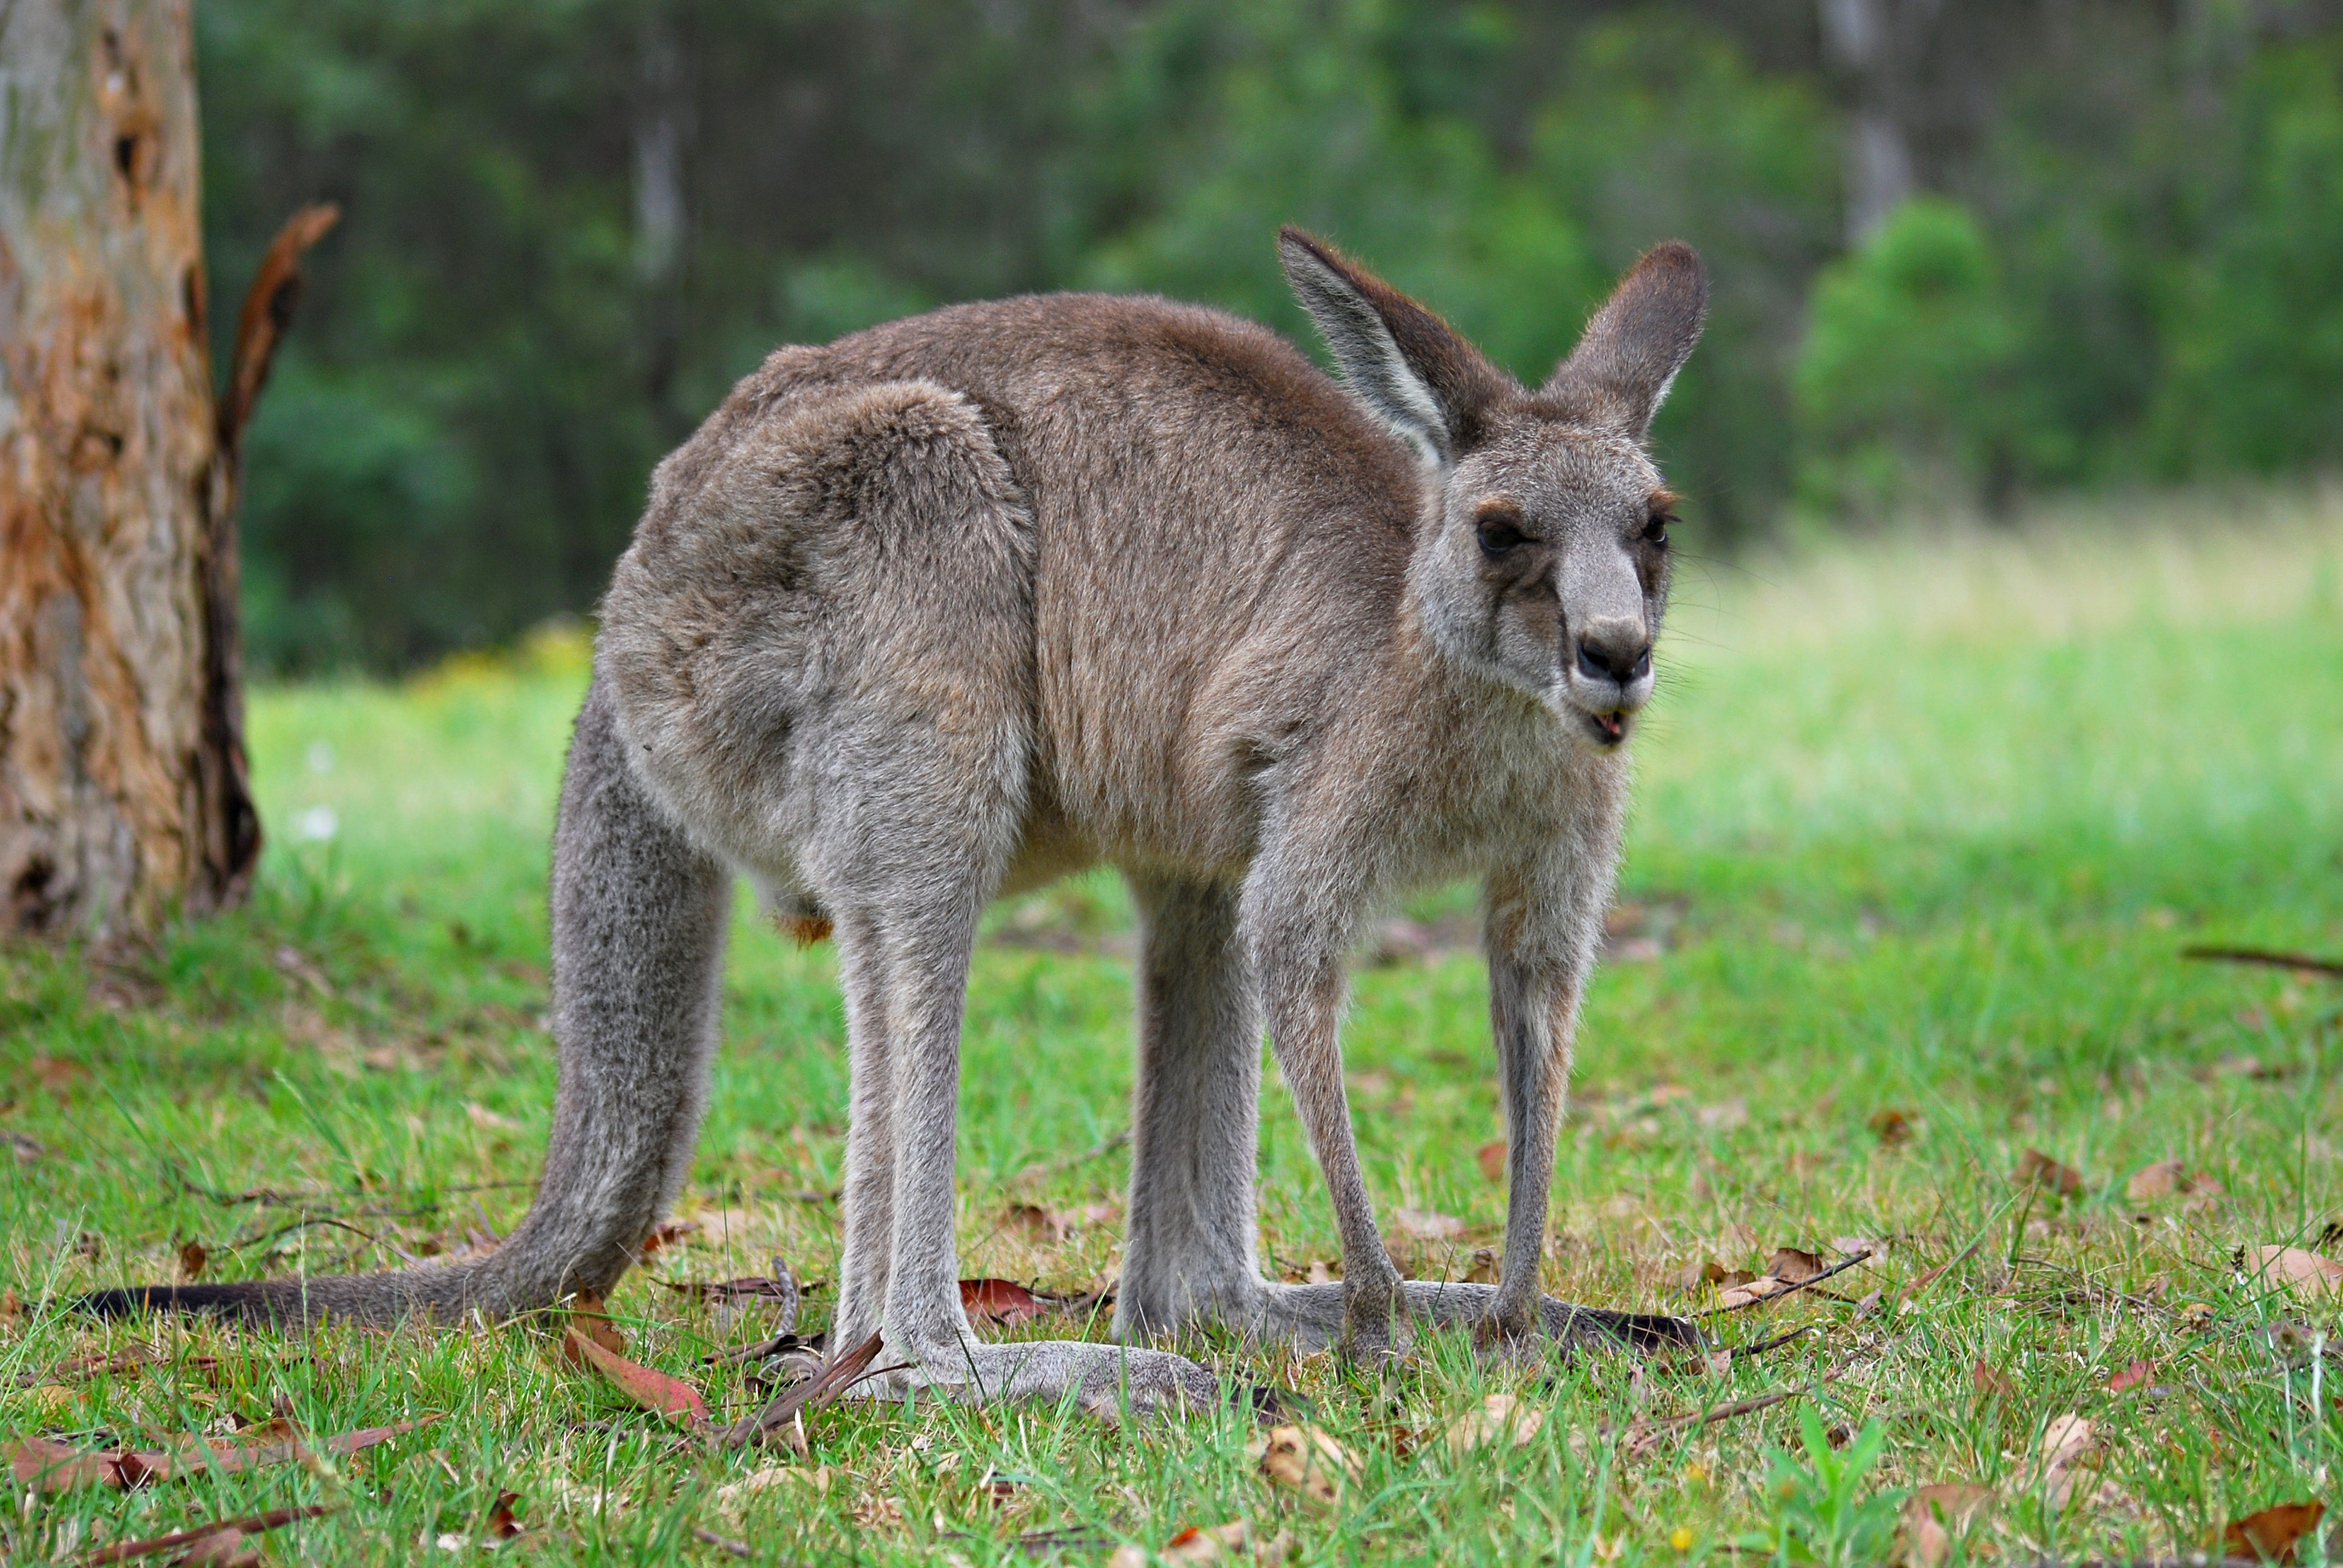 Detail Images Of Kangaroo Nomer 1